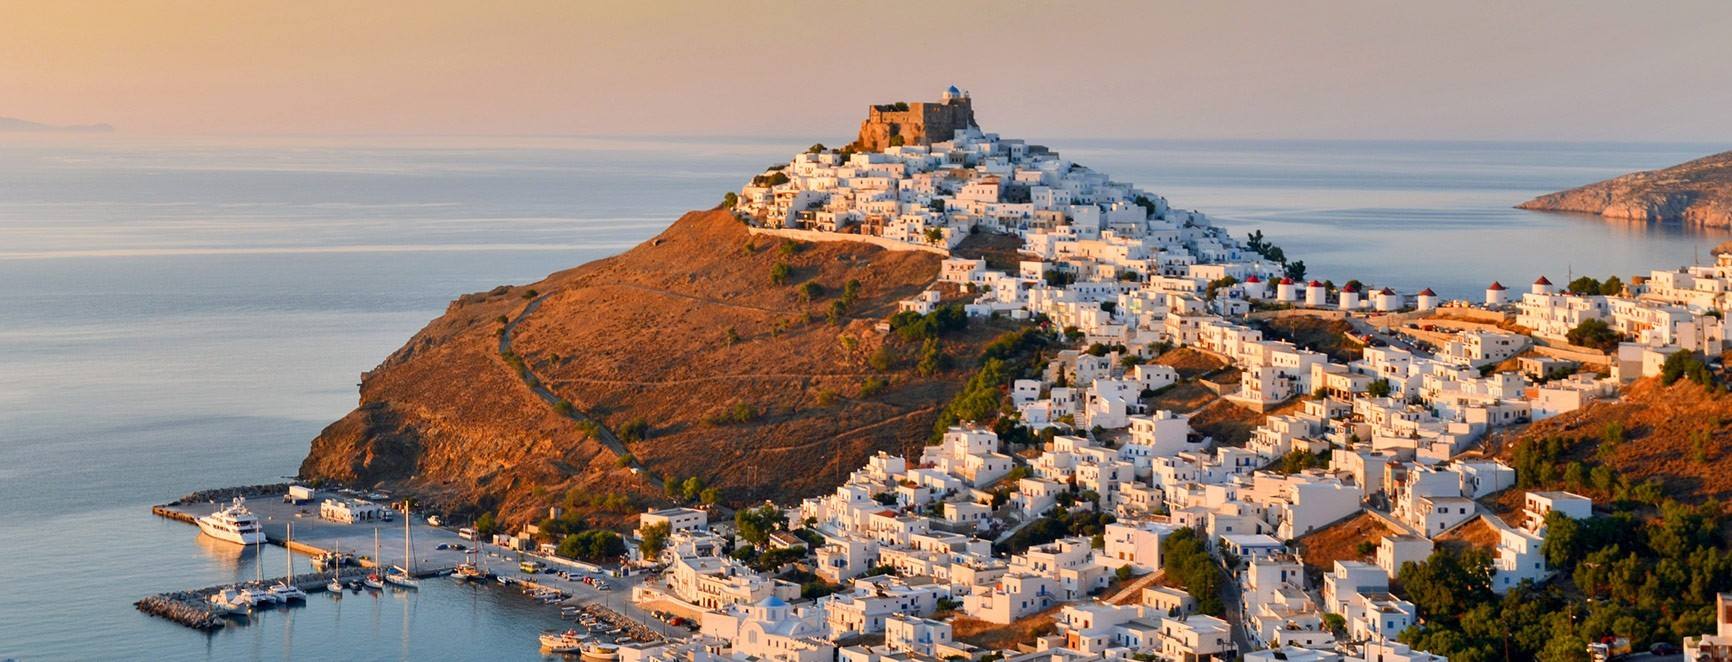 Οι τέσσερις ιδανικότεροι ελληνικοί προορισμοί για διακοπές με το ταίρι σου